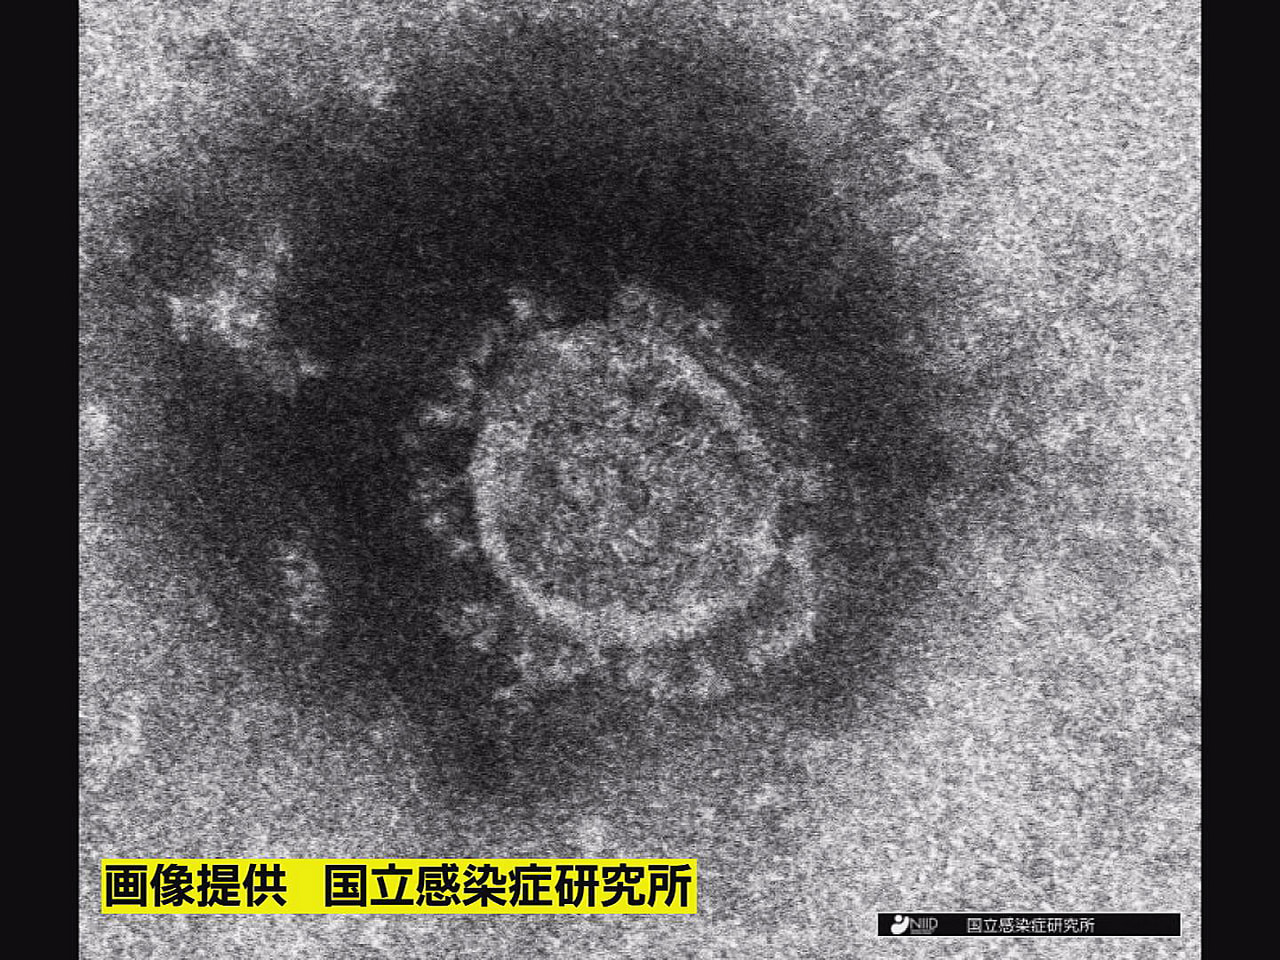 岐阜県は２１日、新型コロナウイルスの新規感染者が６１５人、また１人の死亡が確認さ...